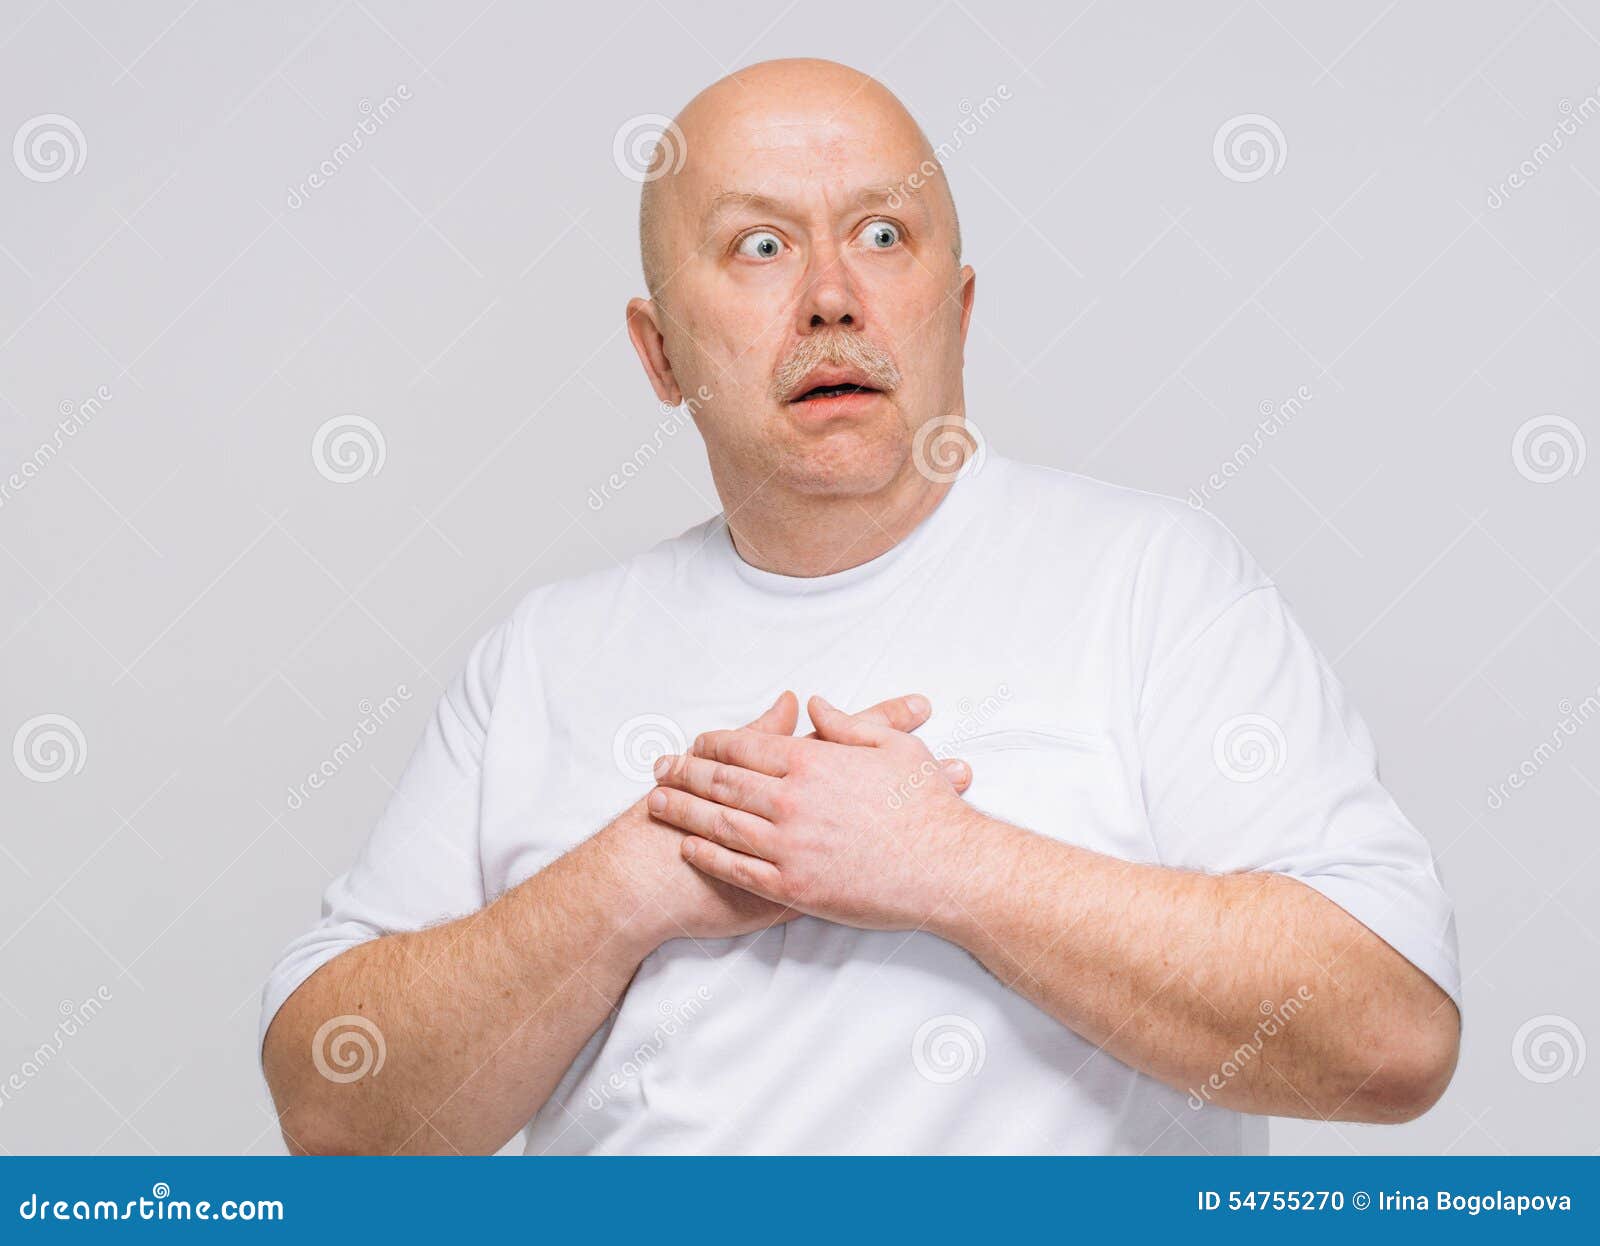 Guy Having Heart Attack Stock Photo